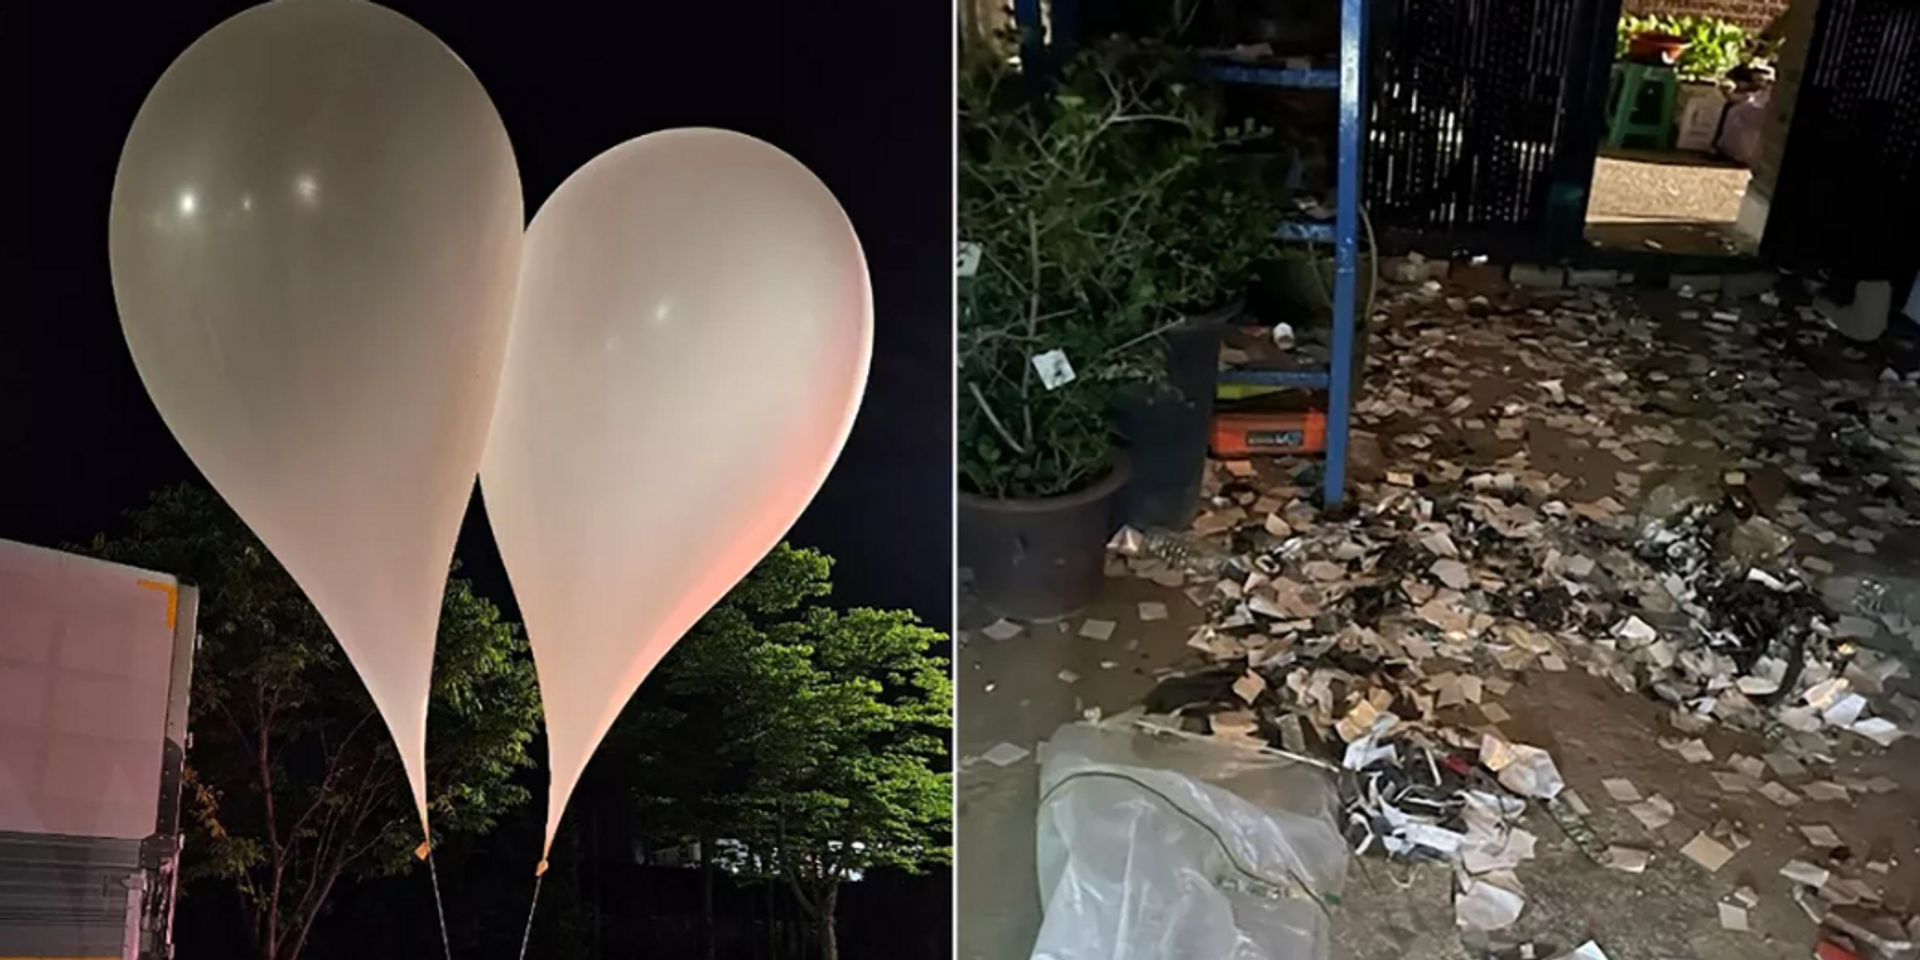 Мешки с мусором на воздушных шарах, предположительно отправленные Северной Кореей, в Сеуле. 29 мая 2024 - ИноСМИ, 1920, 29.05.2024